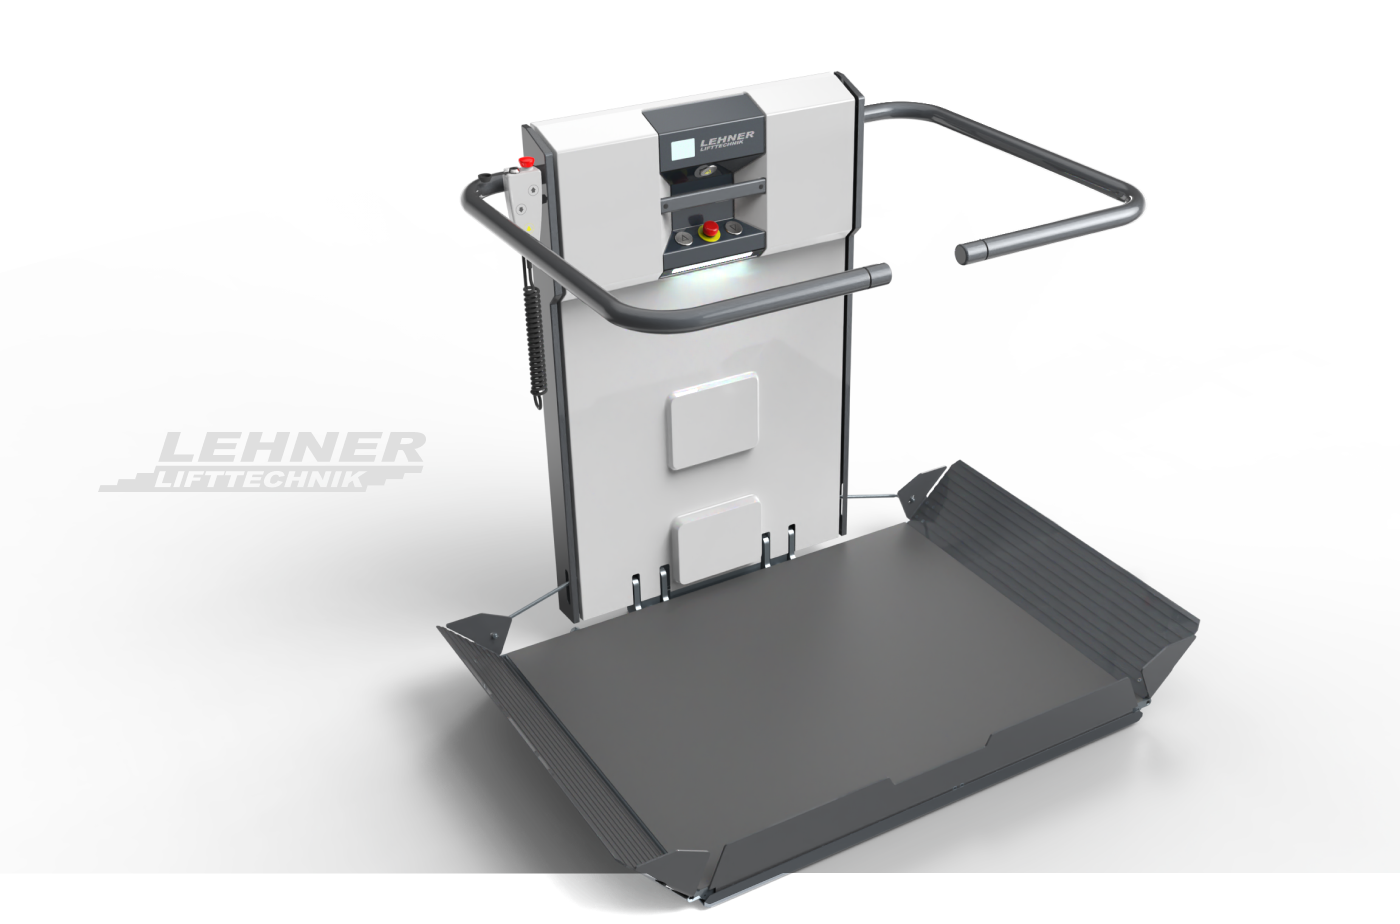 Produktdesign für Lehner Lifttechnik – 3D Produkt-Rendering